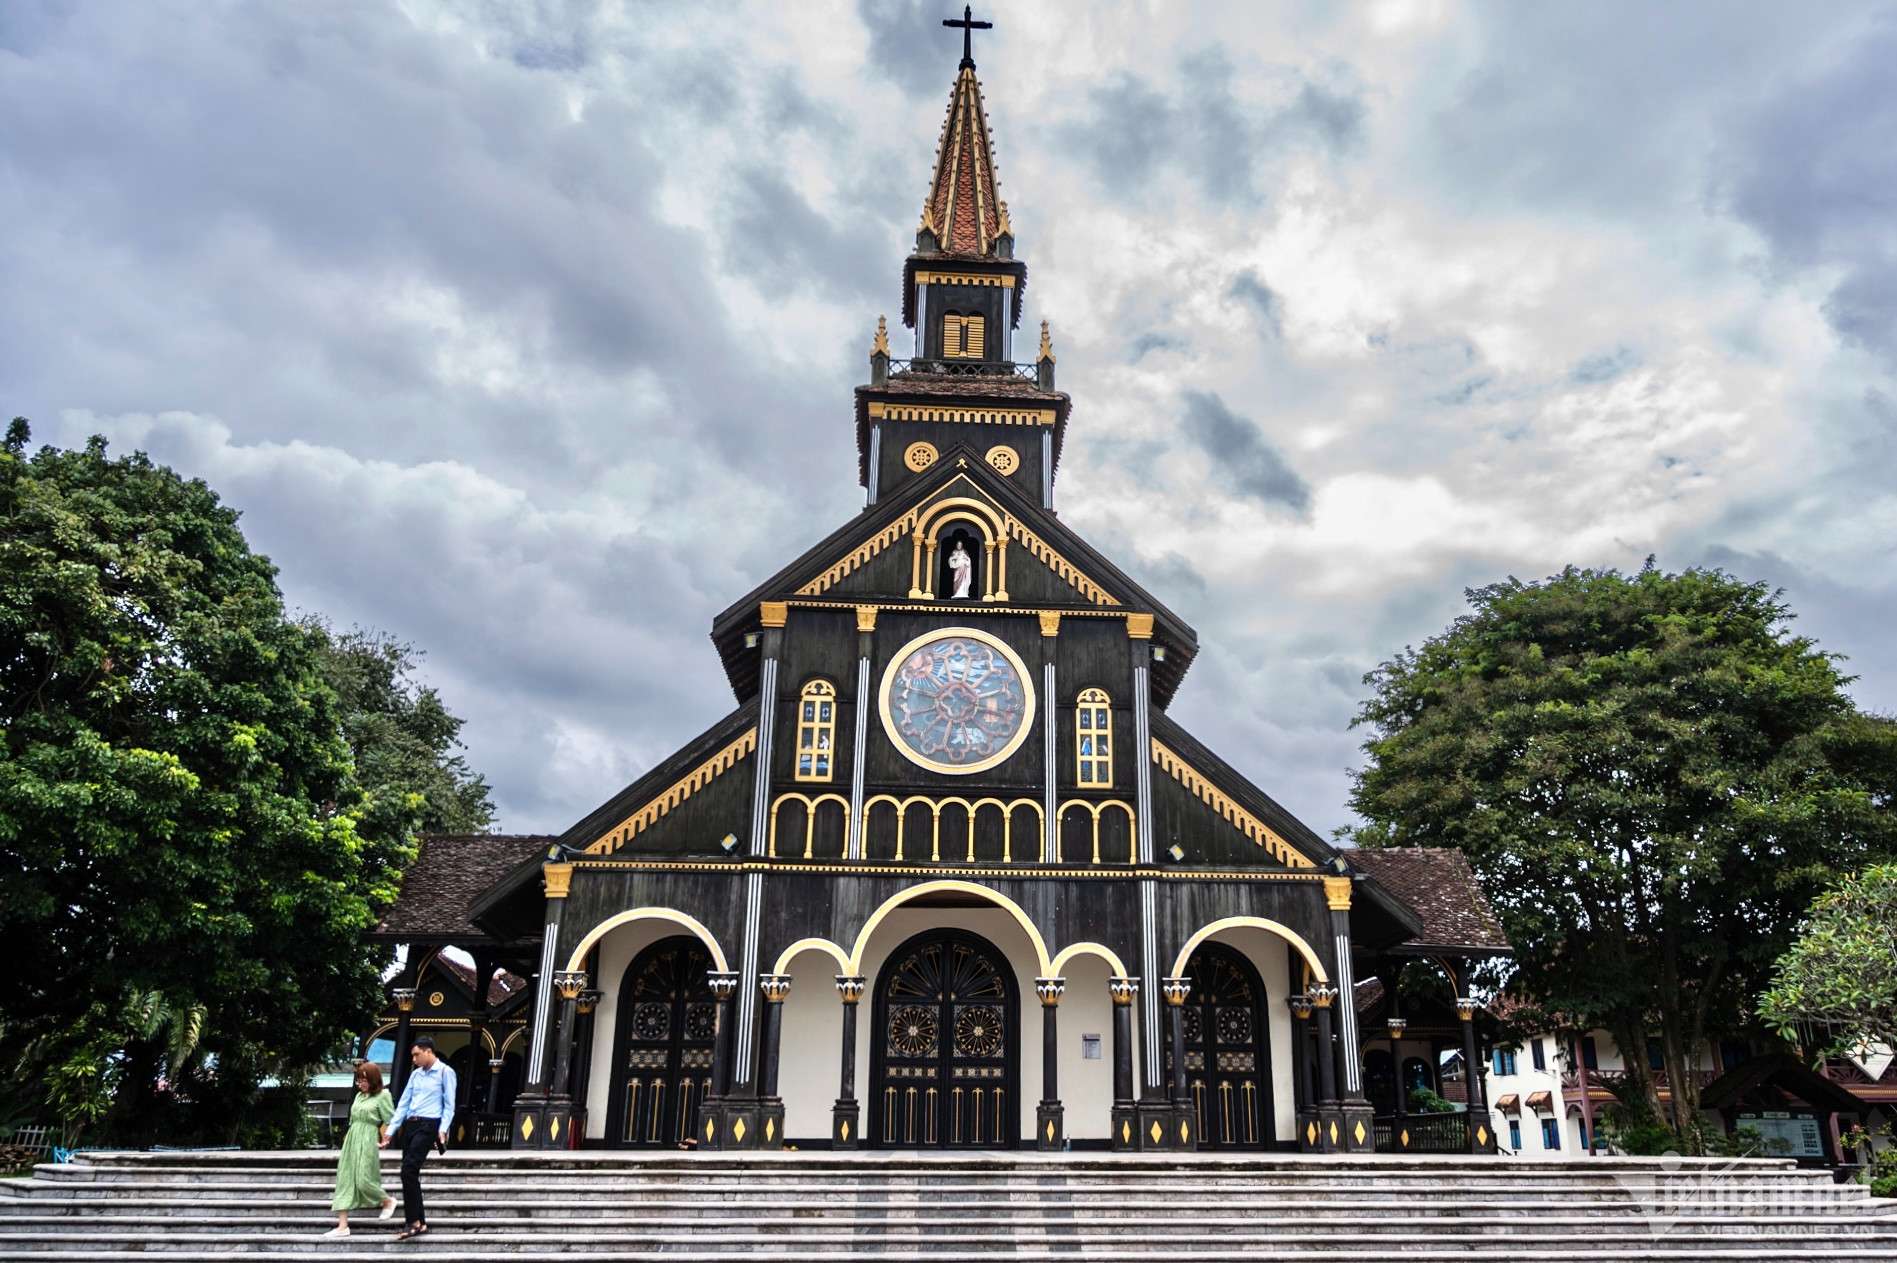 Nhà thờ Kon Tum sử dụng lối thiết kế gothic sử dụng chất liệu gỗ độc đáo